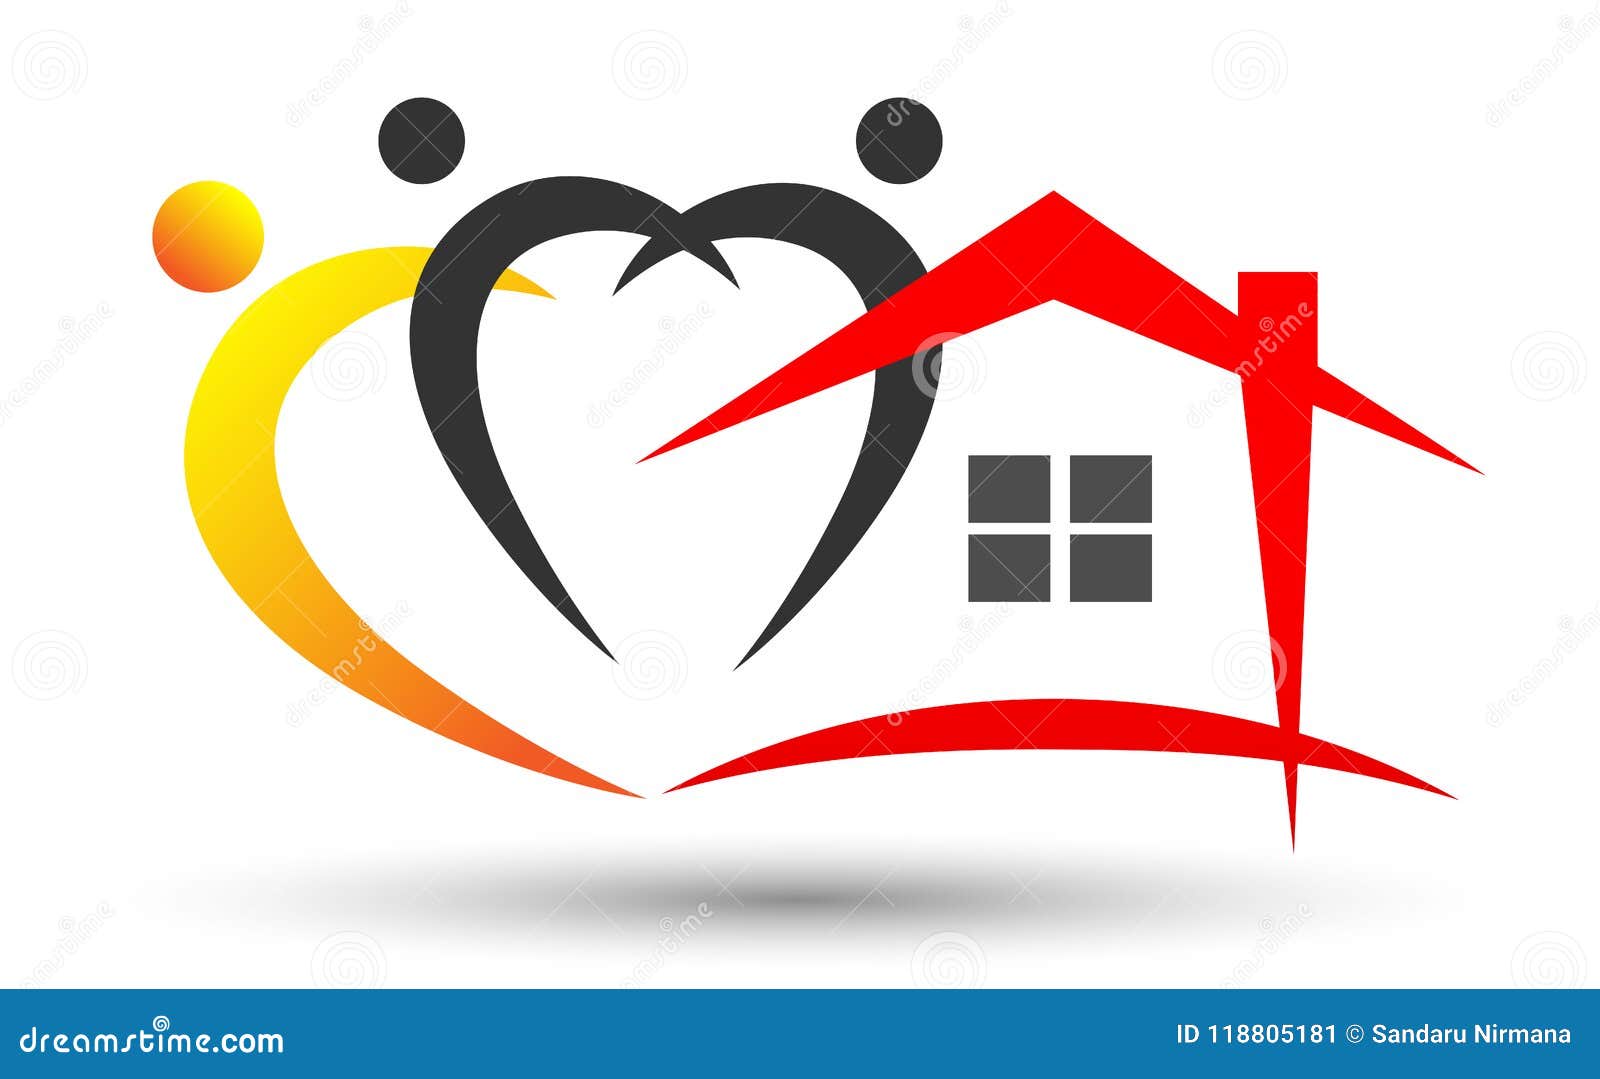 Family Home/ House Logo, Family Union Happy Love Heart Shaped Family ...